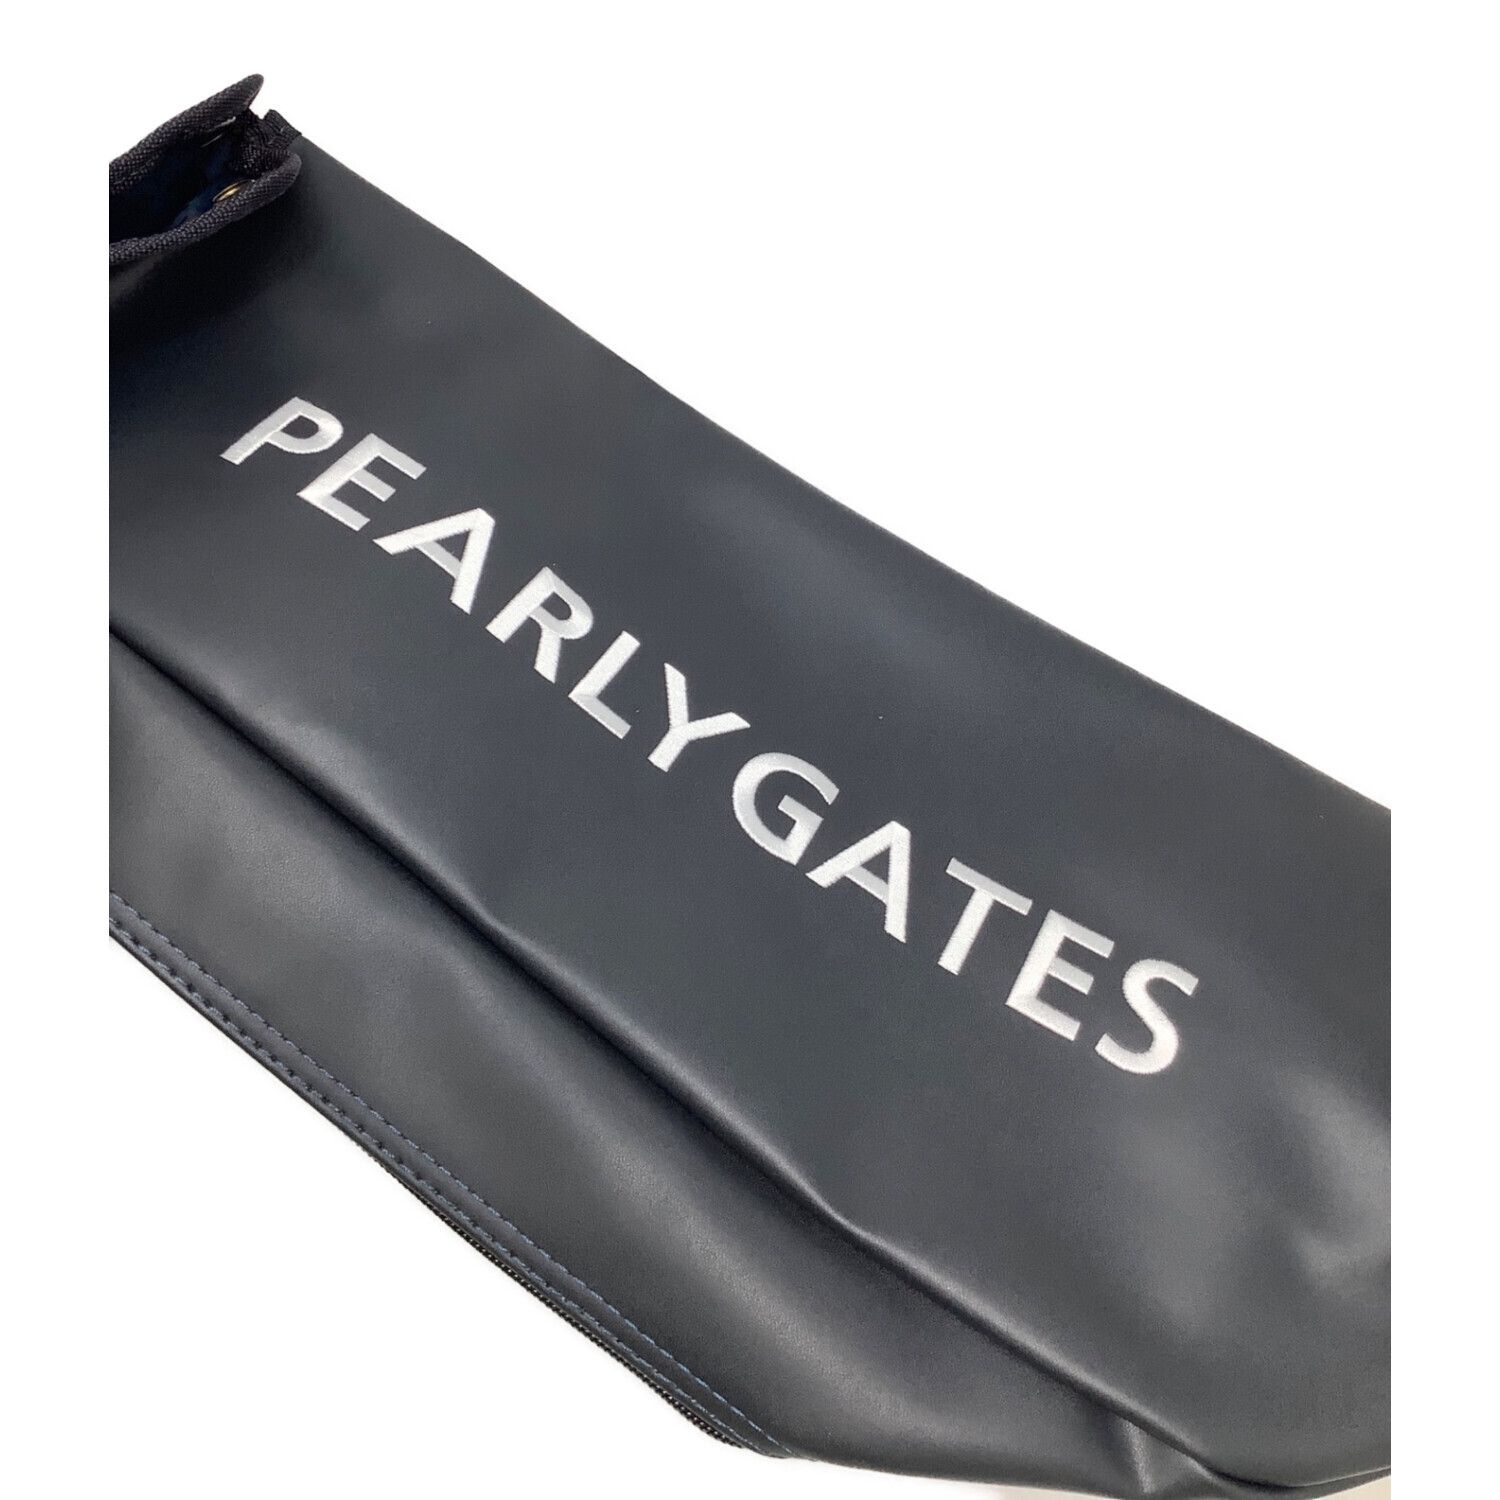 PEARLY GATES (パーリーゲイツ) セルフスタンドバッグ (46インチ対応 